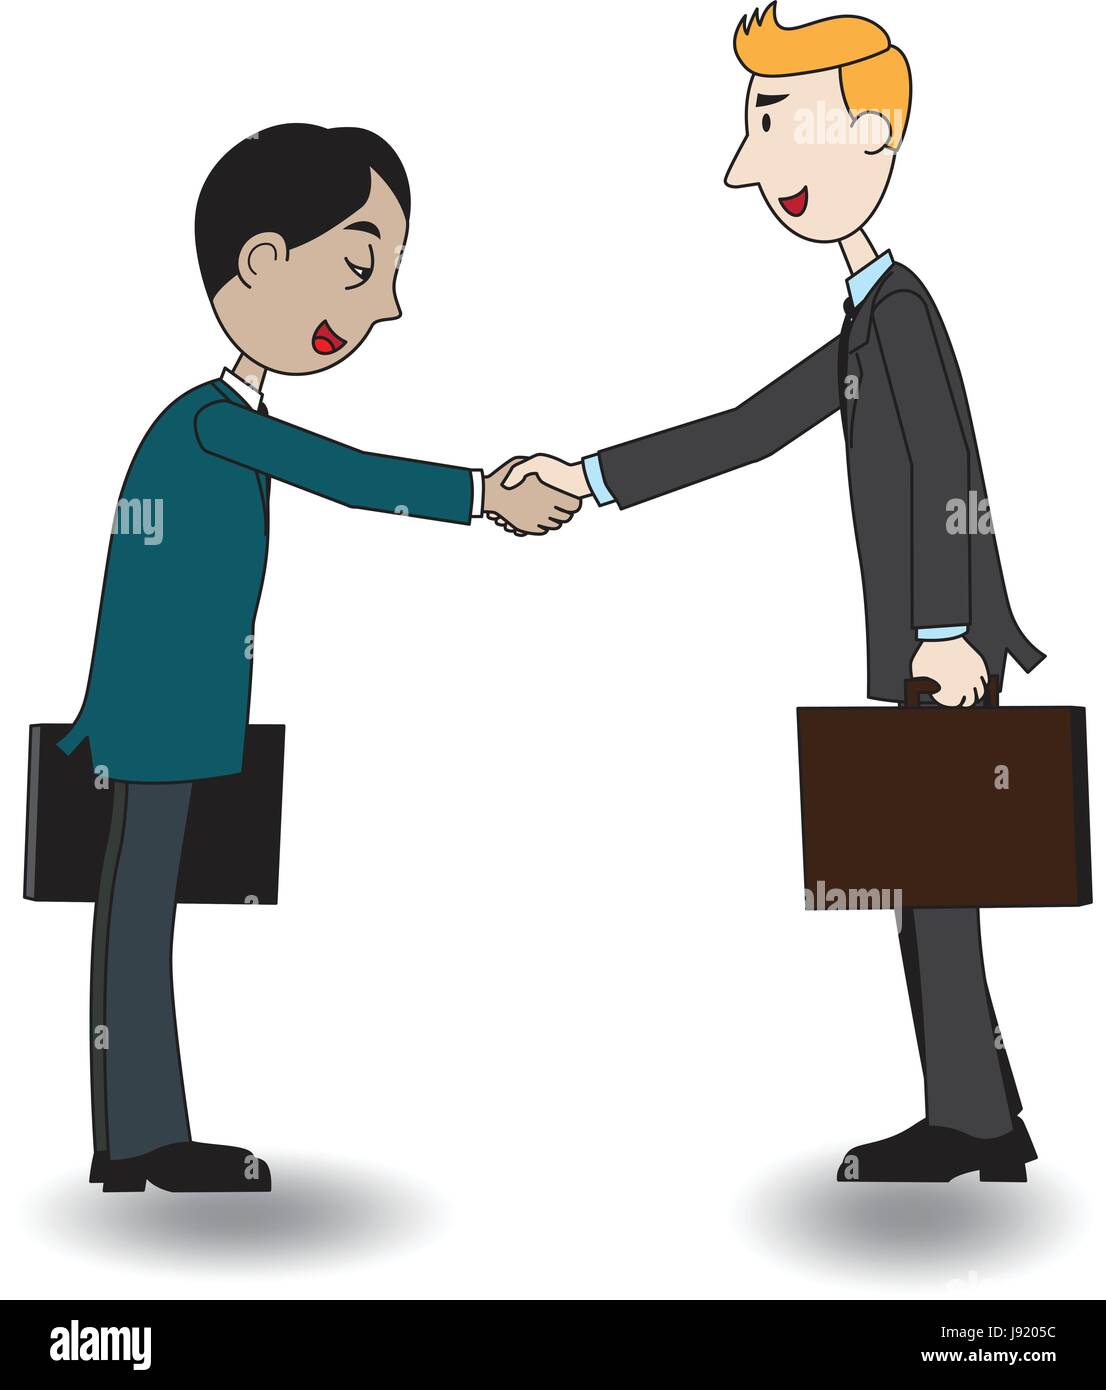 Cartoon illustration d'un partenariat et de la coopération dans les affaires. Deux hommes d'heureux de leur serrer la main. L'un caucasoid et un pays asiatique. Illustration de Vecteur